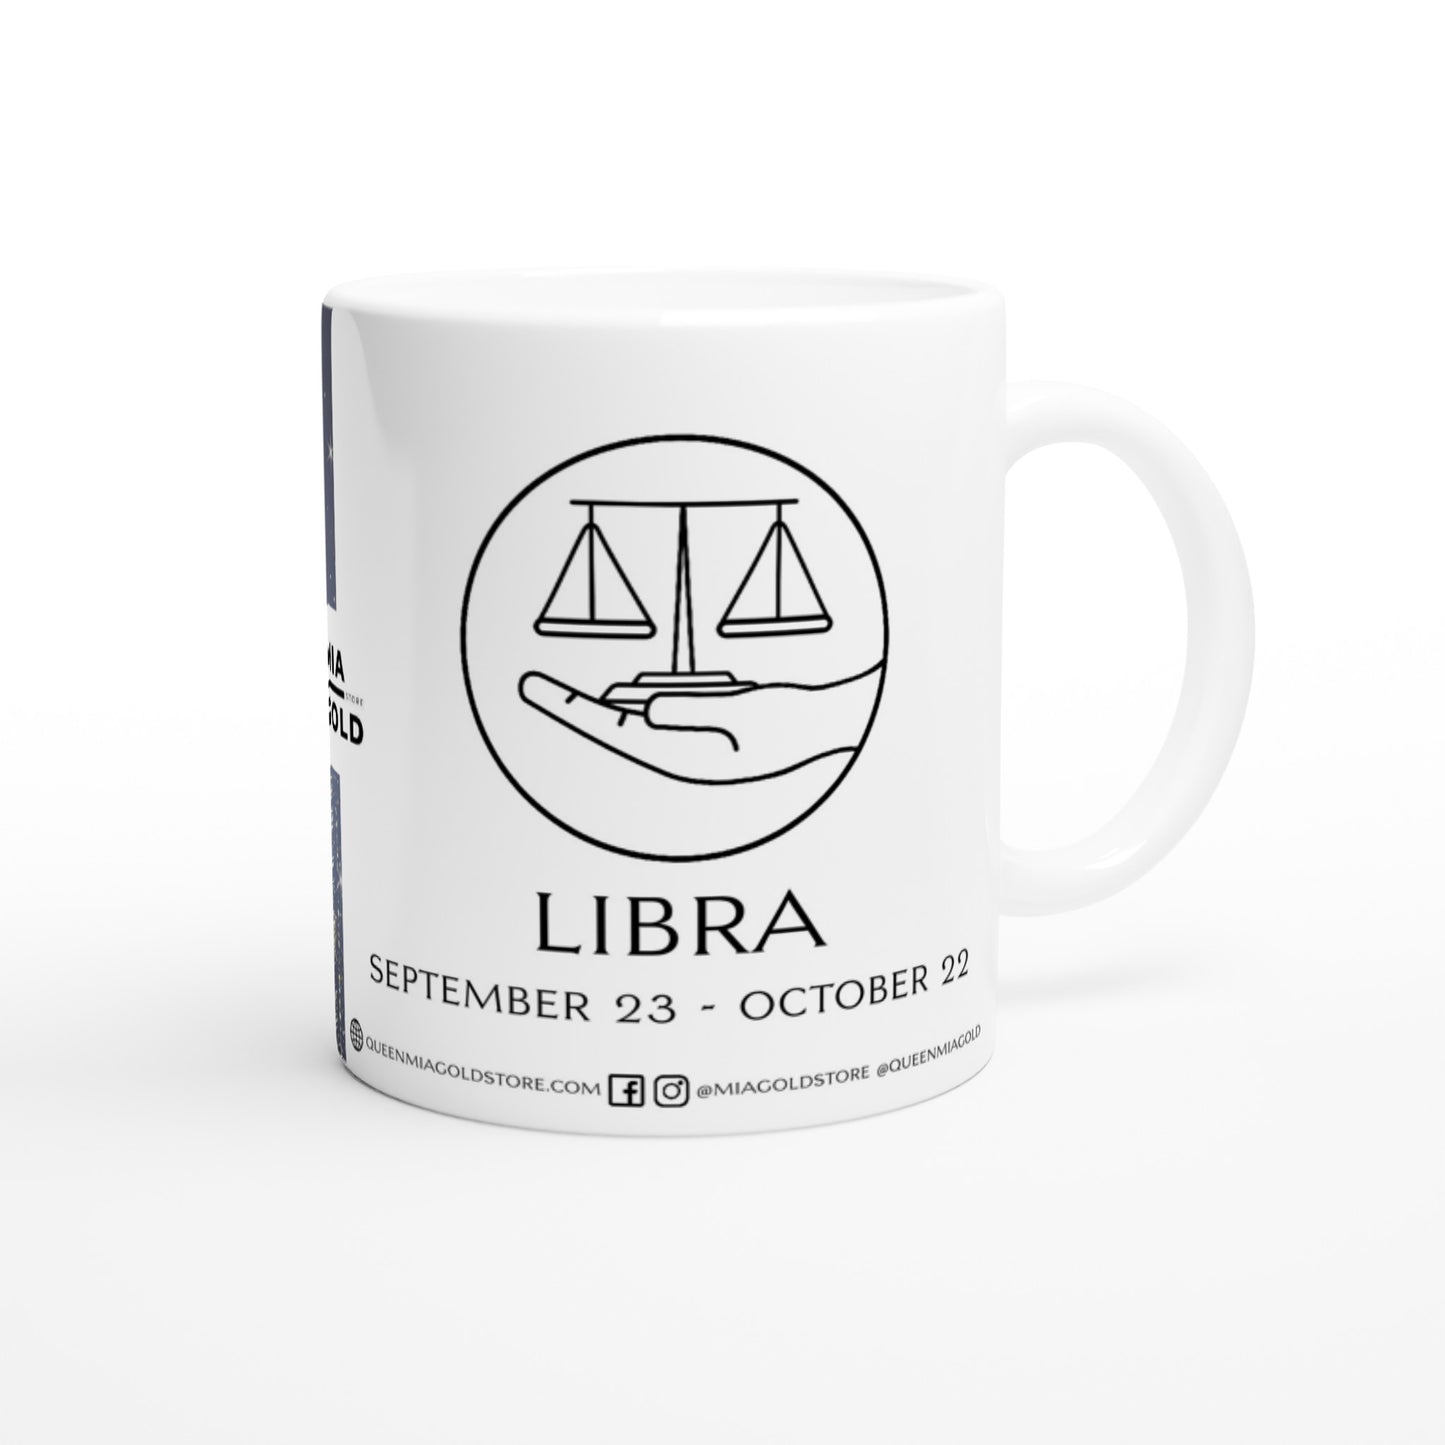 Libra - Ceramic Mug